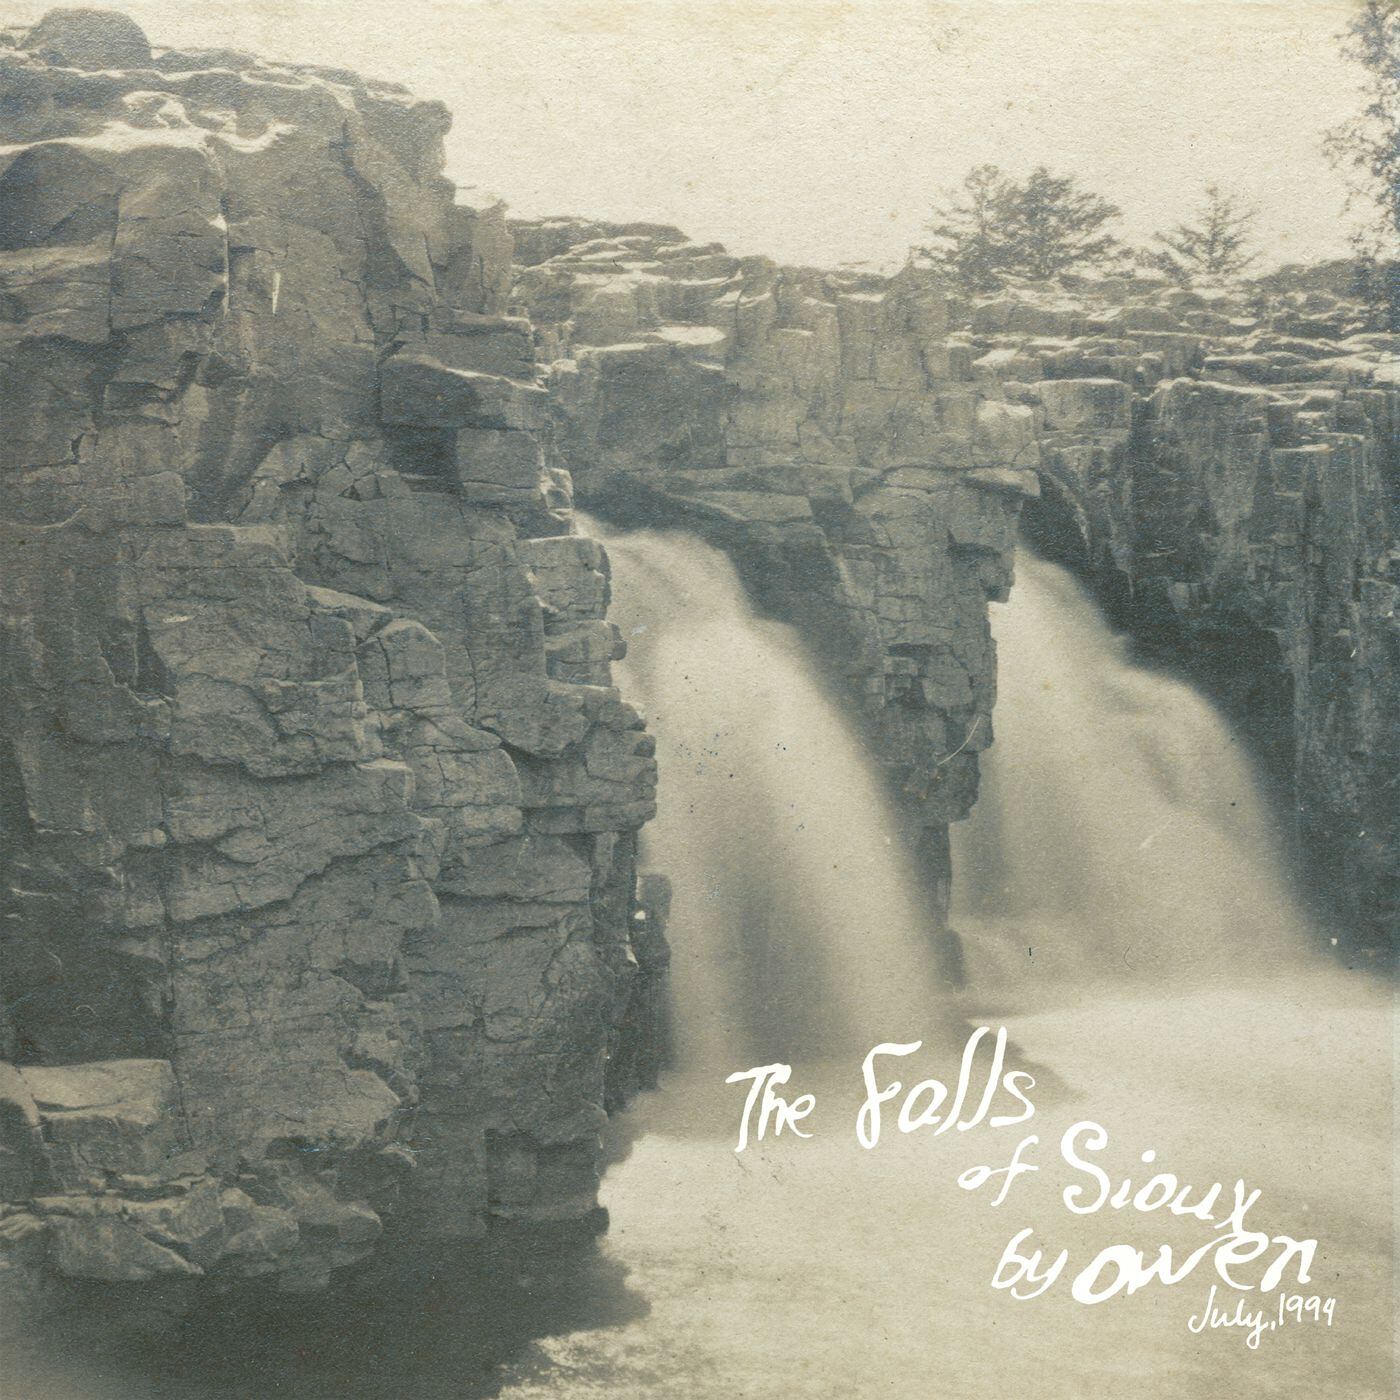 ‘The Falls of Sioux’ es el nuevo título que Kinsella publica a través del sello Polyvinyl.